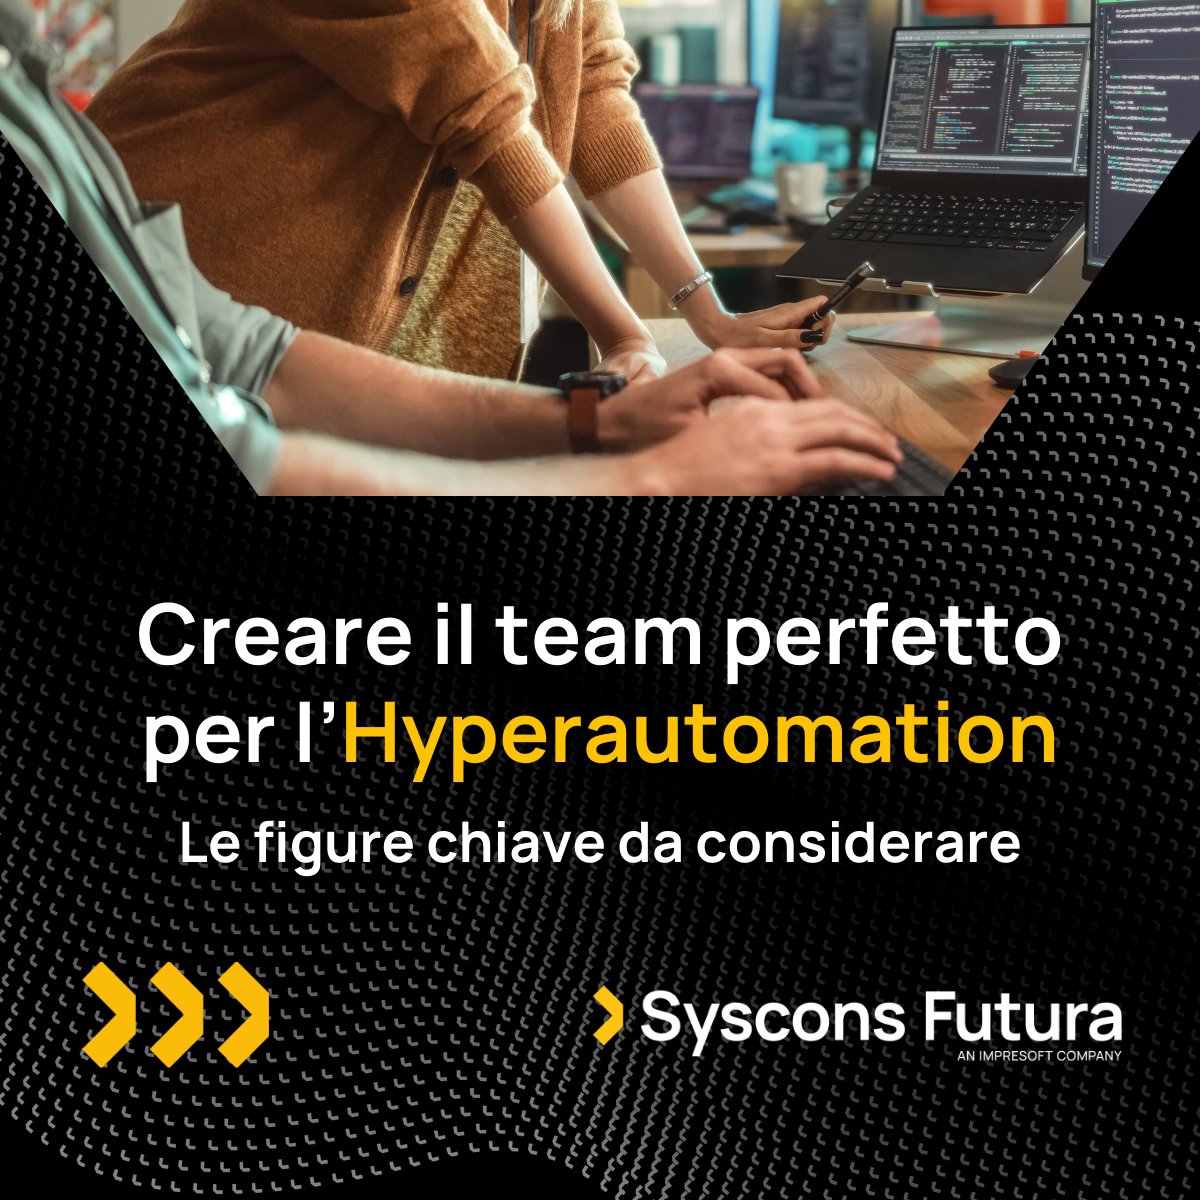 Un team completo è essenziale per il successo dell'Hyperautomation. Ogni membro porta competenze uniche. Il nostro team massimizza i benefici dell'automazione, portando le aziende verso nuovi livelli di efficienza e produttività. 
#HyperautomationTeam #HyperTuesday